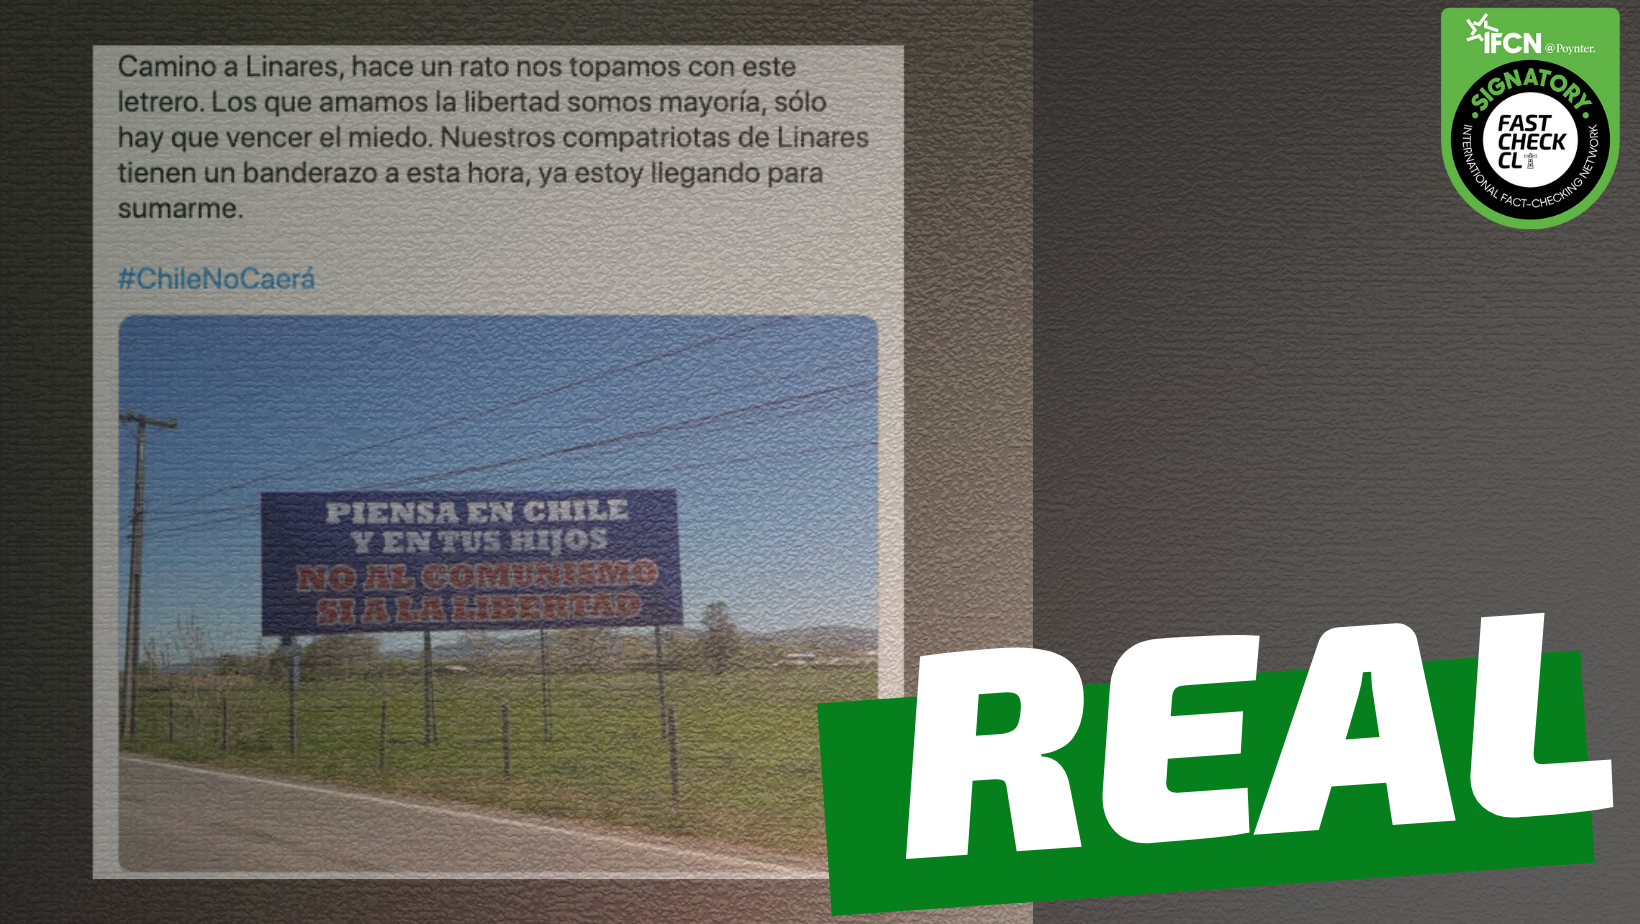 You are currently viewing Cartel que dice: “Piensa en Chile y en tus hijos. No al comunismo, sí a la libertad”: #Real